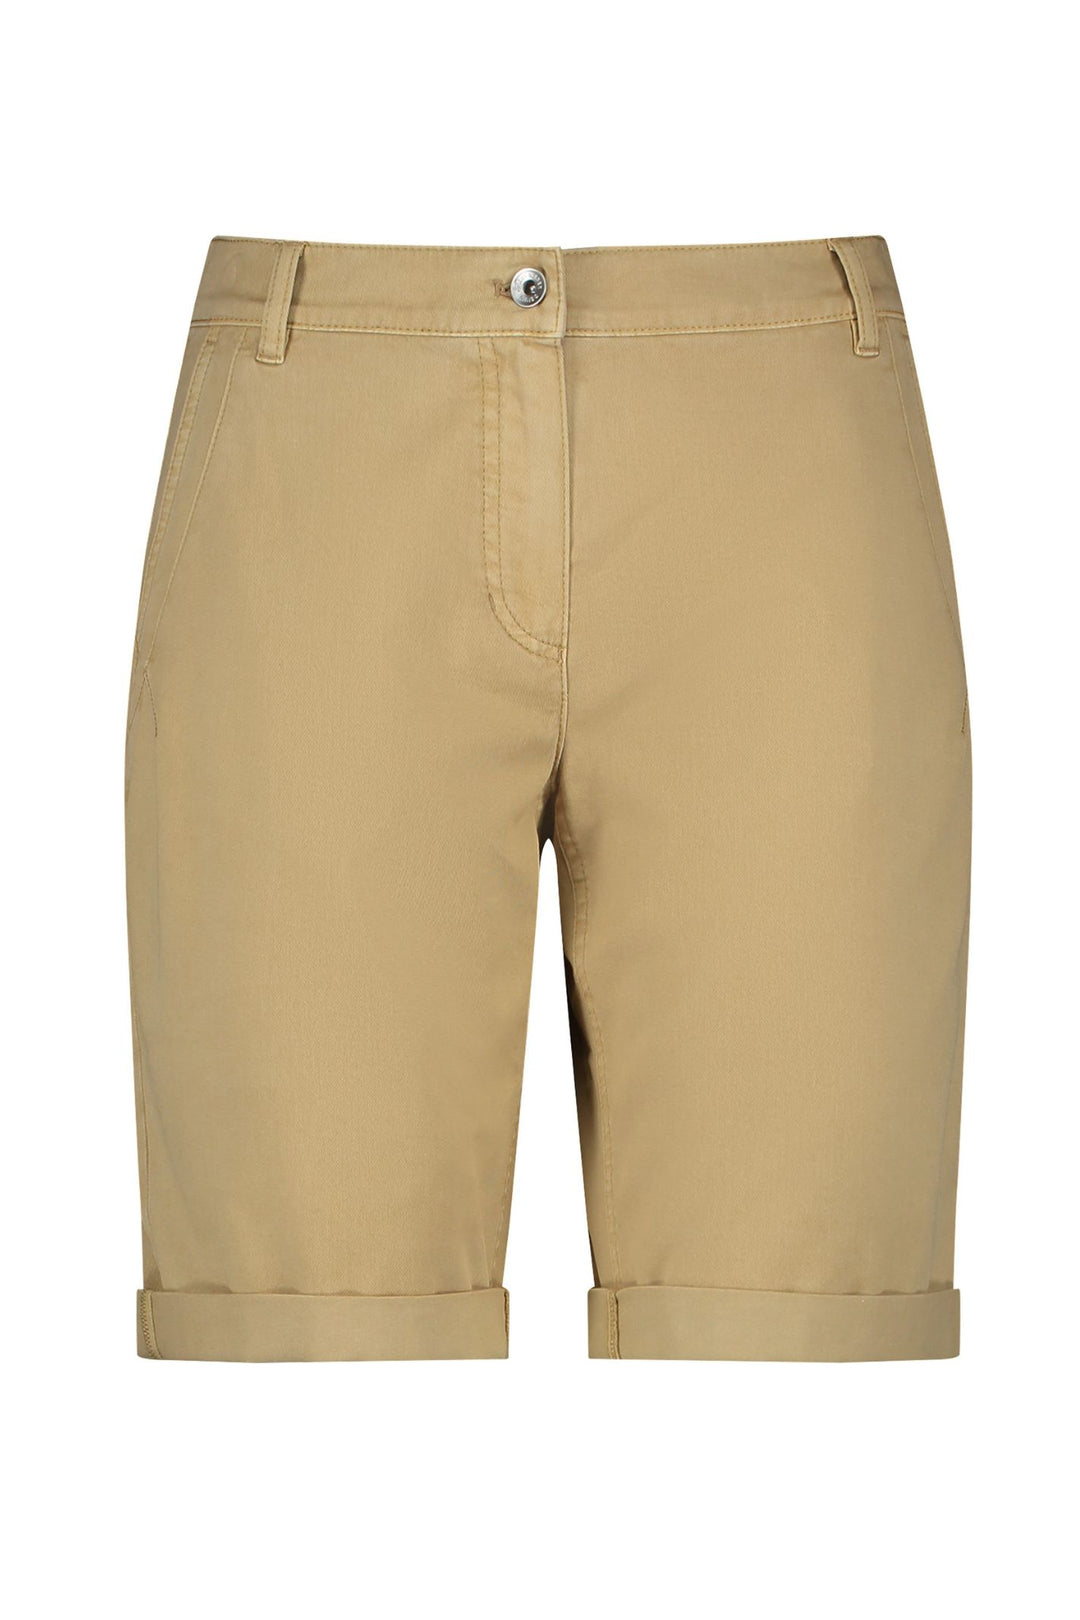 Gerry Weber 222135 Dune Cotton Shorts